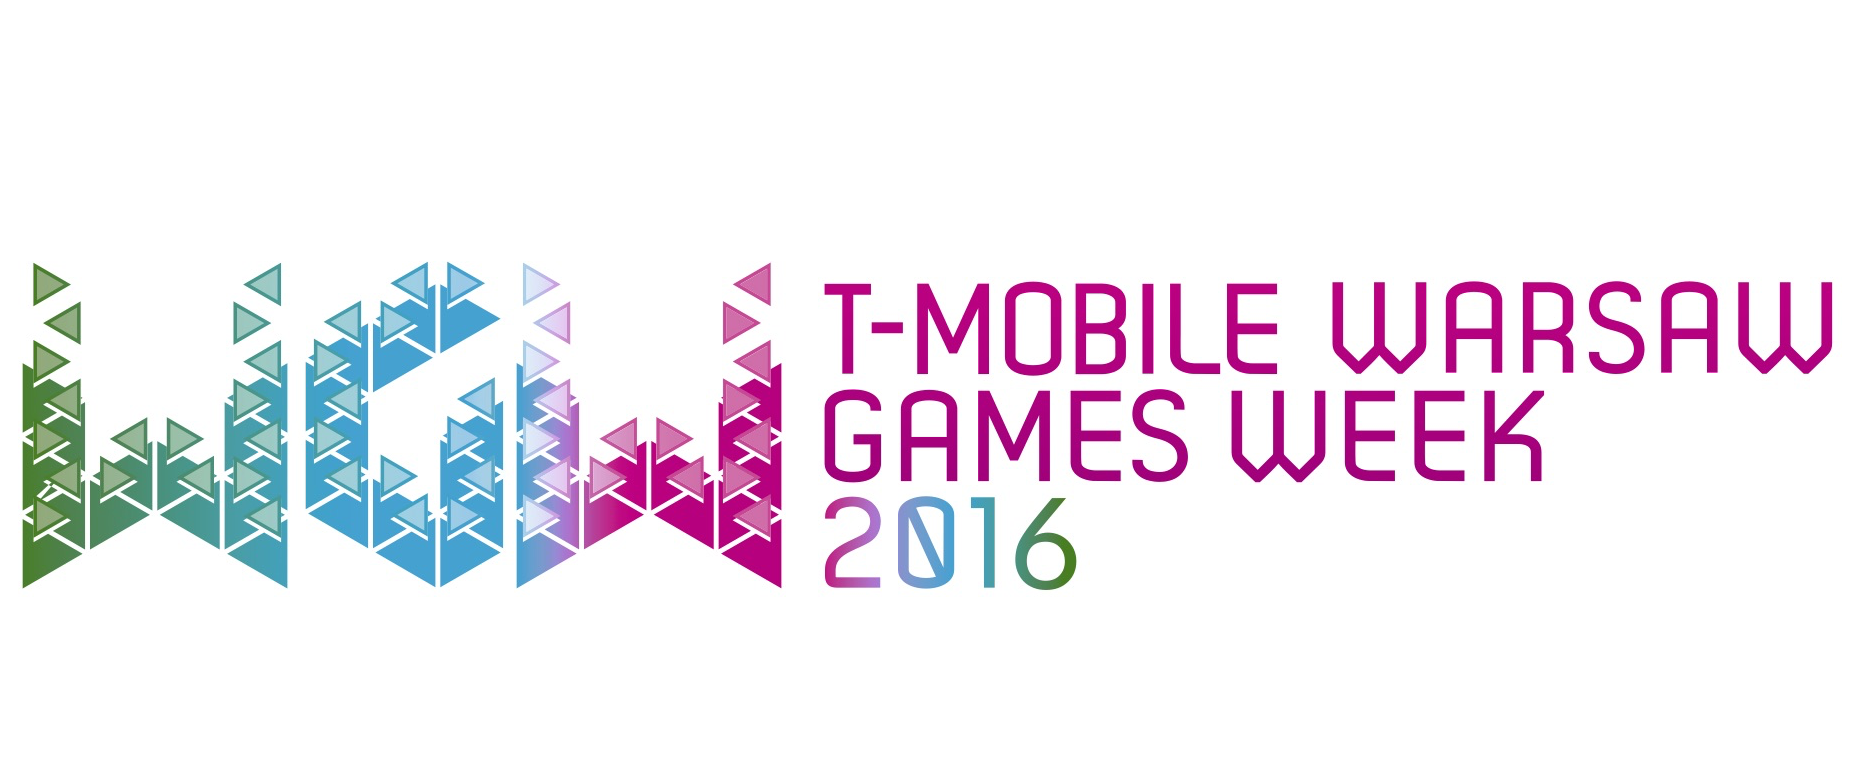 T-mobile_warsaw_games_week_2016_v2